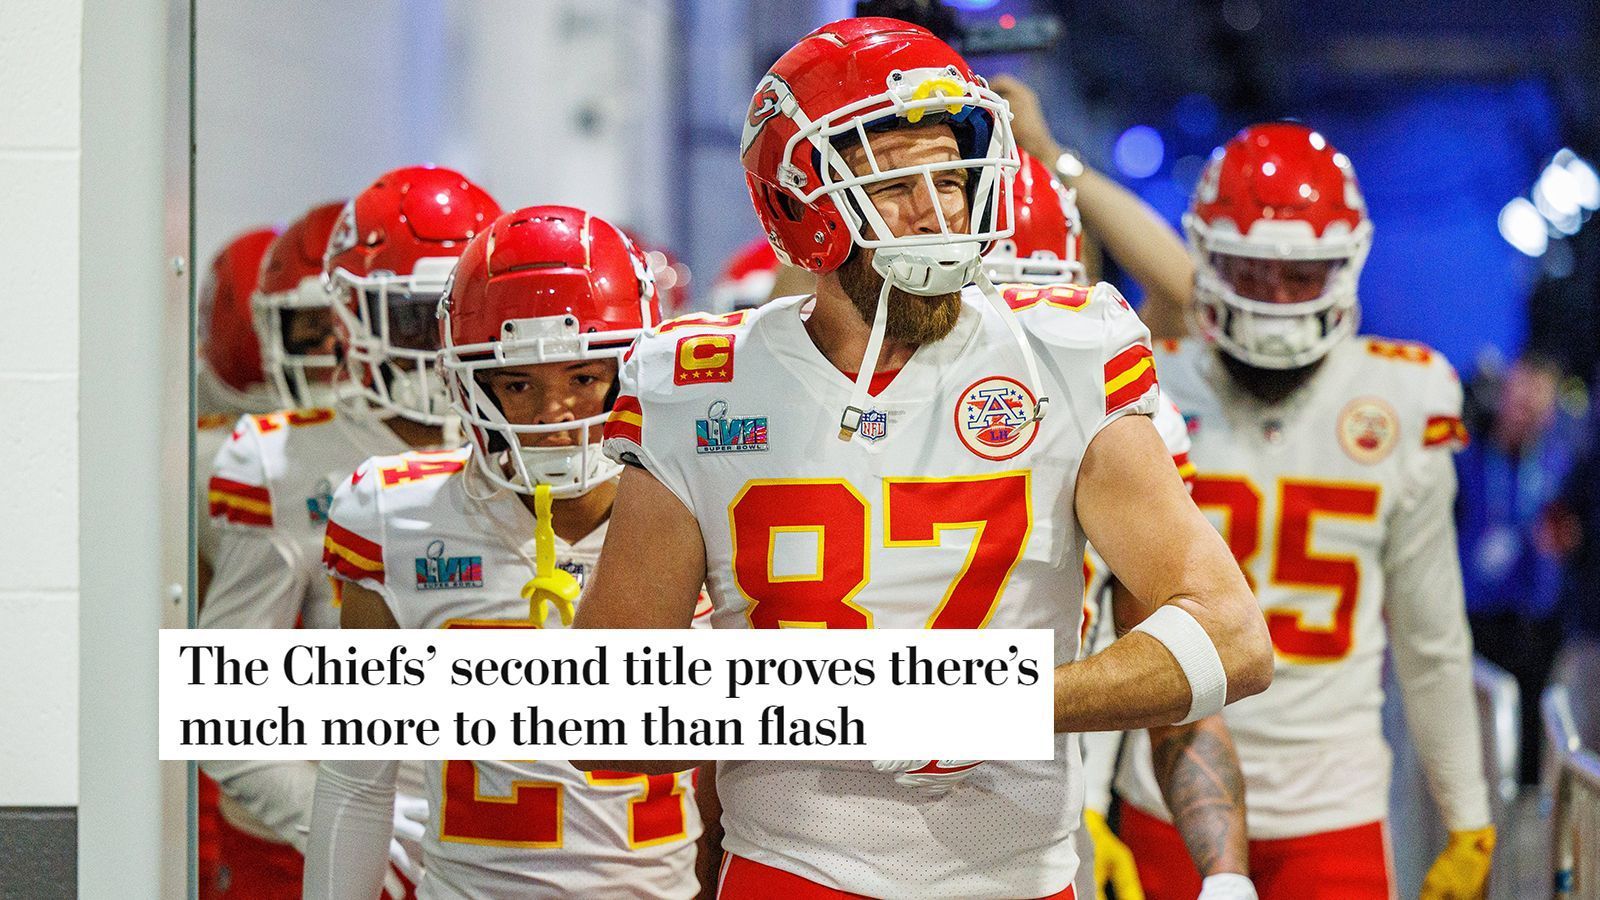 
                <strong>The Washington Post (USA)</strong><br>
                "Der zweite Titel der Chiefs beweist, dass in ihnen viel mehr steckt als nur Blitzlicht."
              